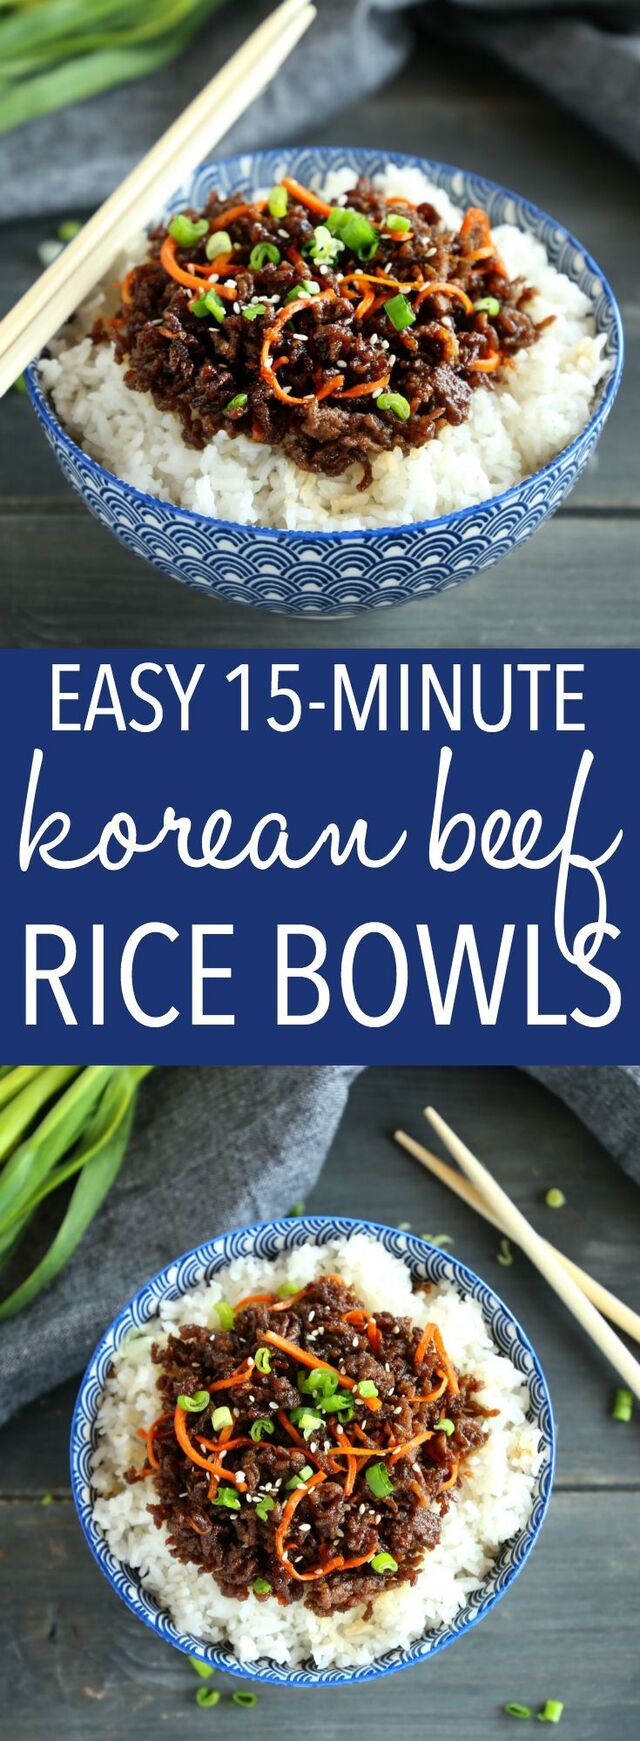 Easy Korean Beef Rice Bowls | Recipe | Healthy weeknight meals, Rice bowls recipes, Beef recipes